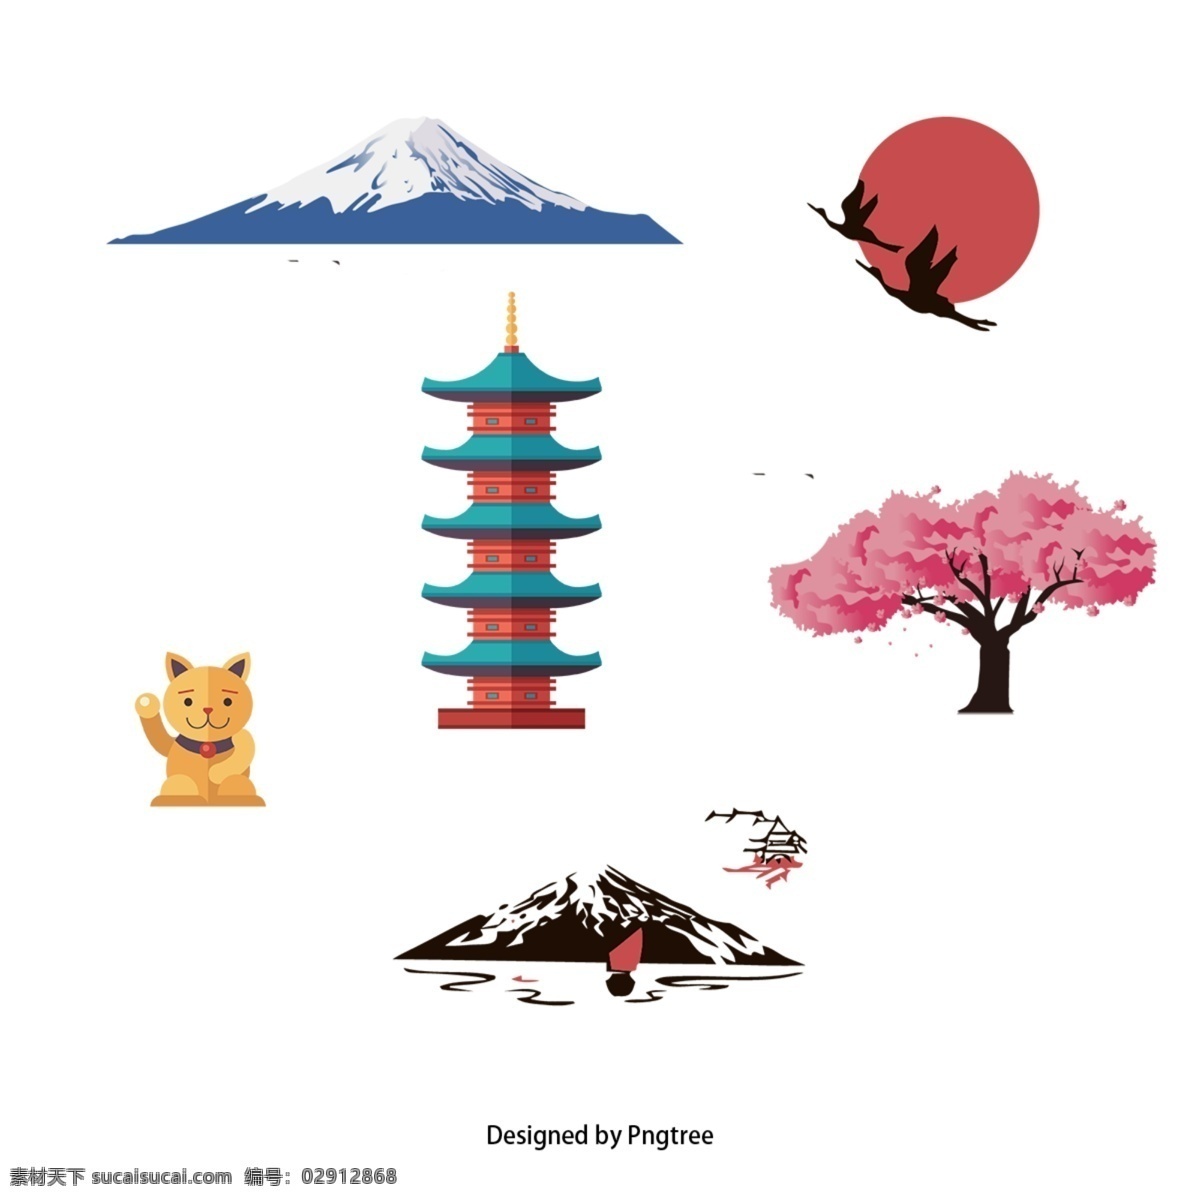 简单 日本 装饰设计 时尚 自然 日文 文化 图标 创意 图形 画报